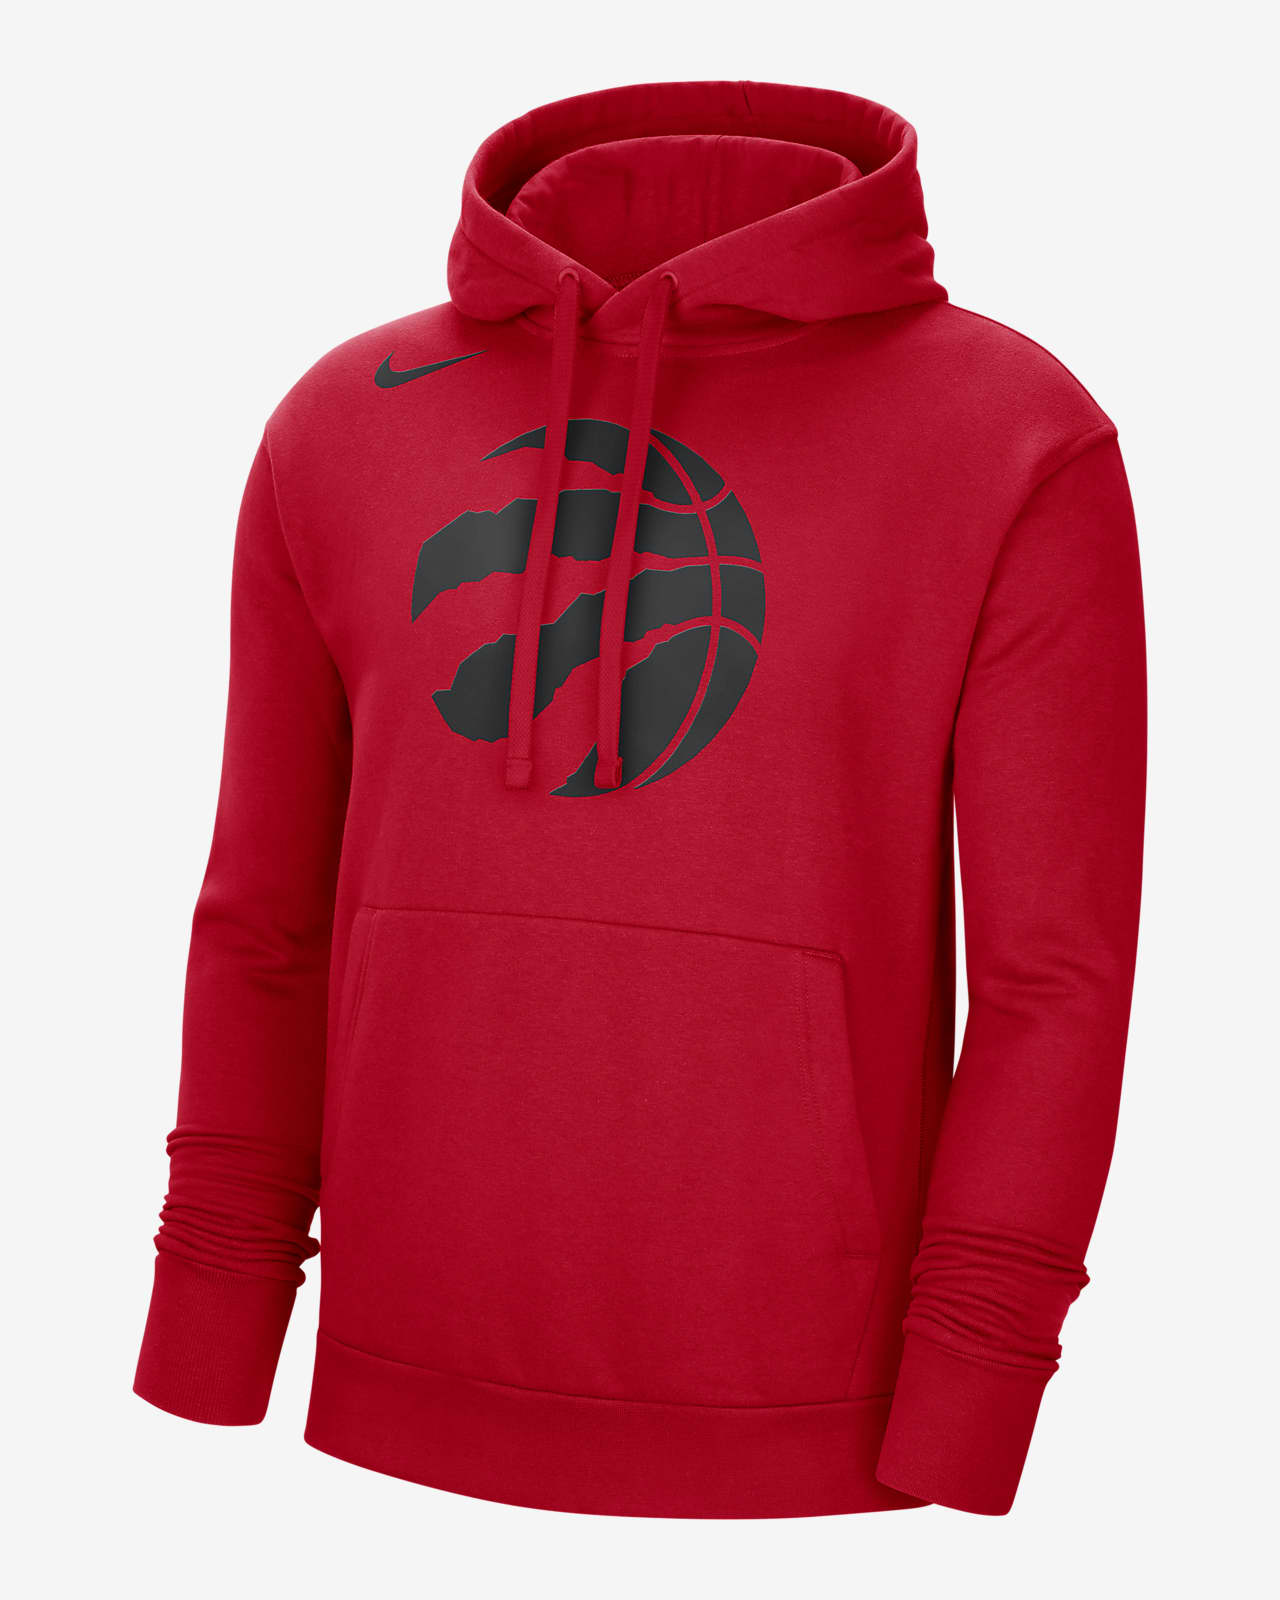 Nike - Men's Toronto Raptors NBA Pullover Hoodie - Red - Fleece